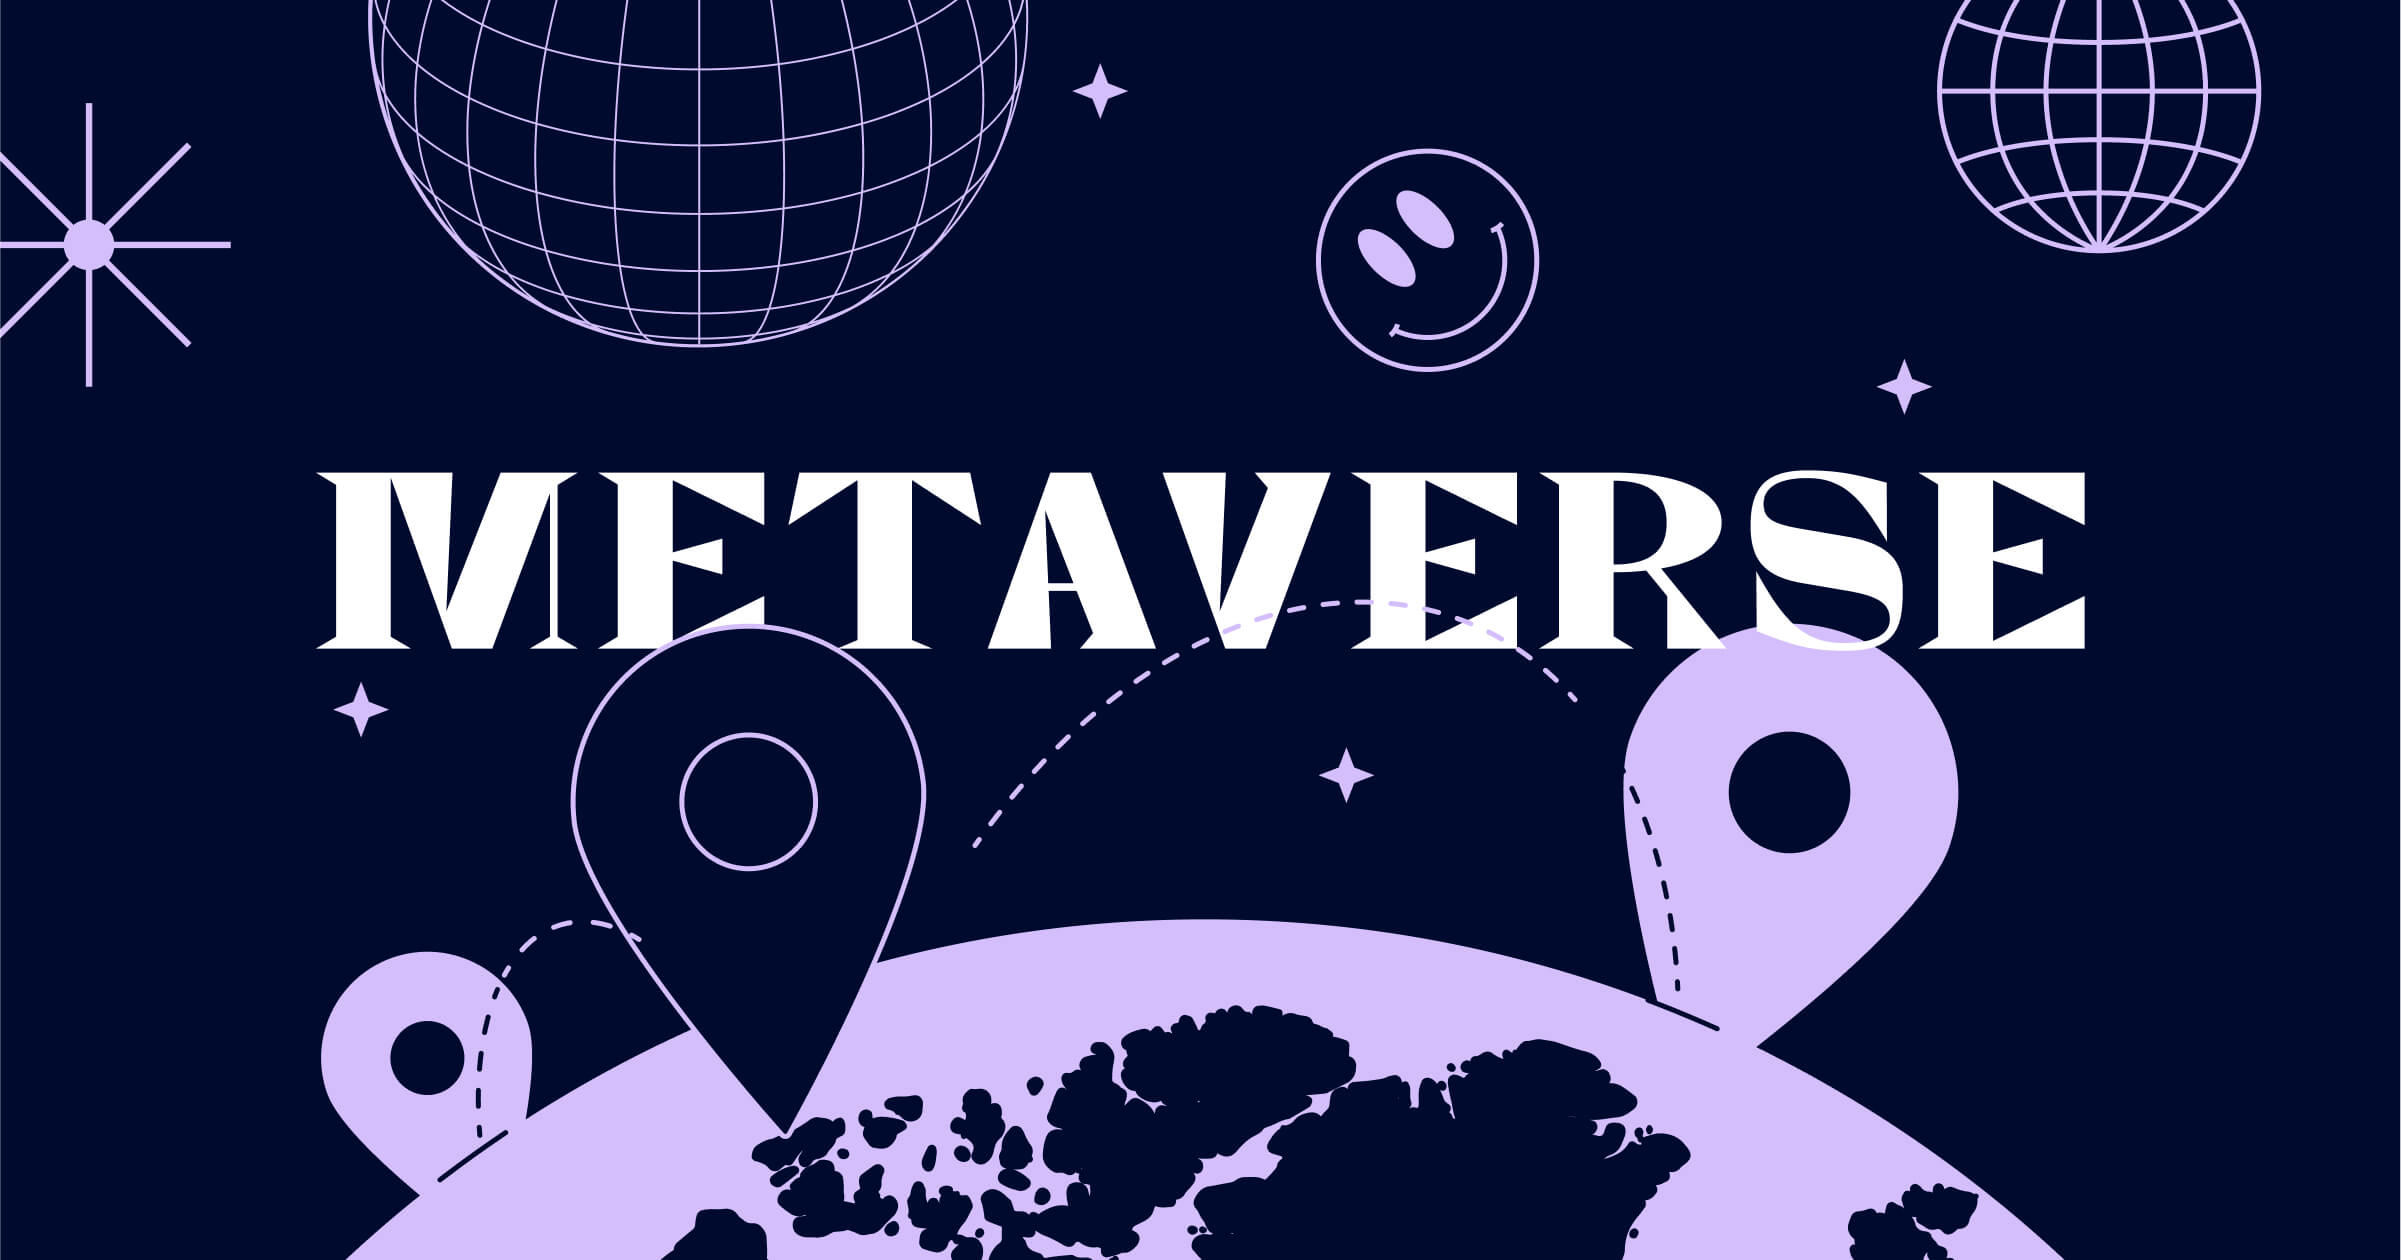 图片展示了以深紫色调为背景，上方有“METAVERSE”字样，下方是地球图案和位置标记，旁边有星球和网格球体图案。